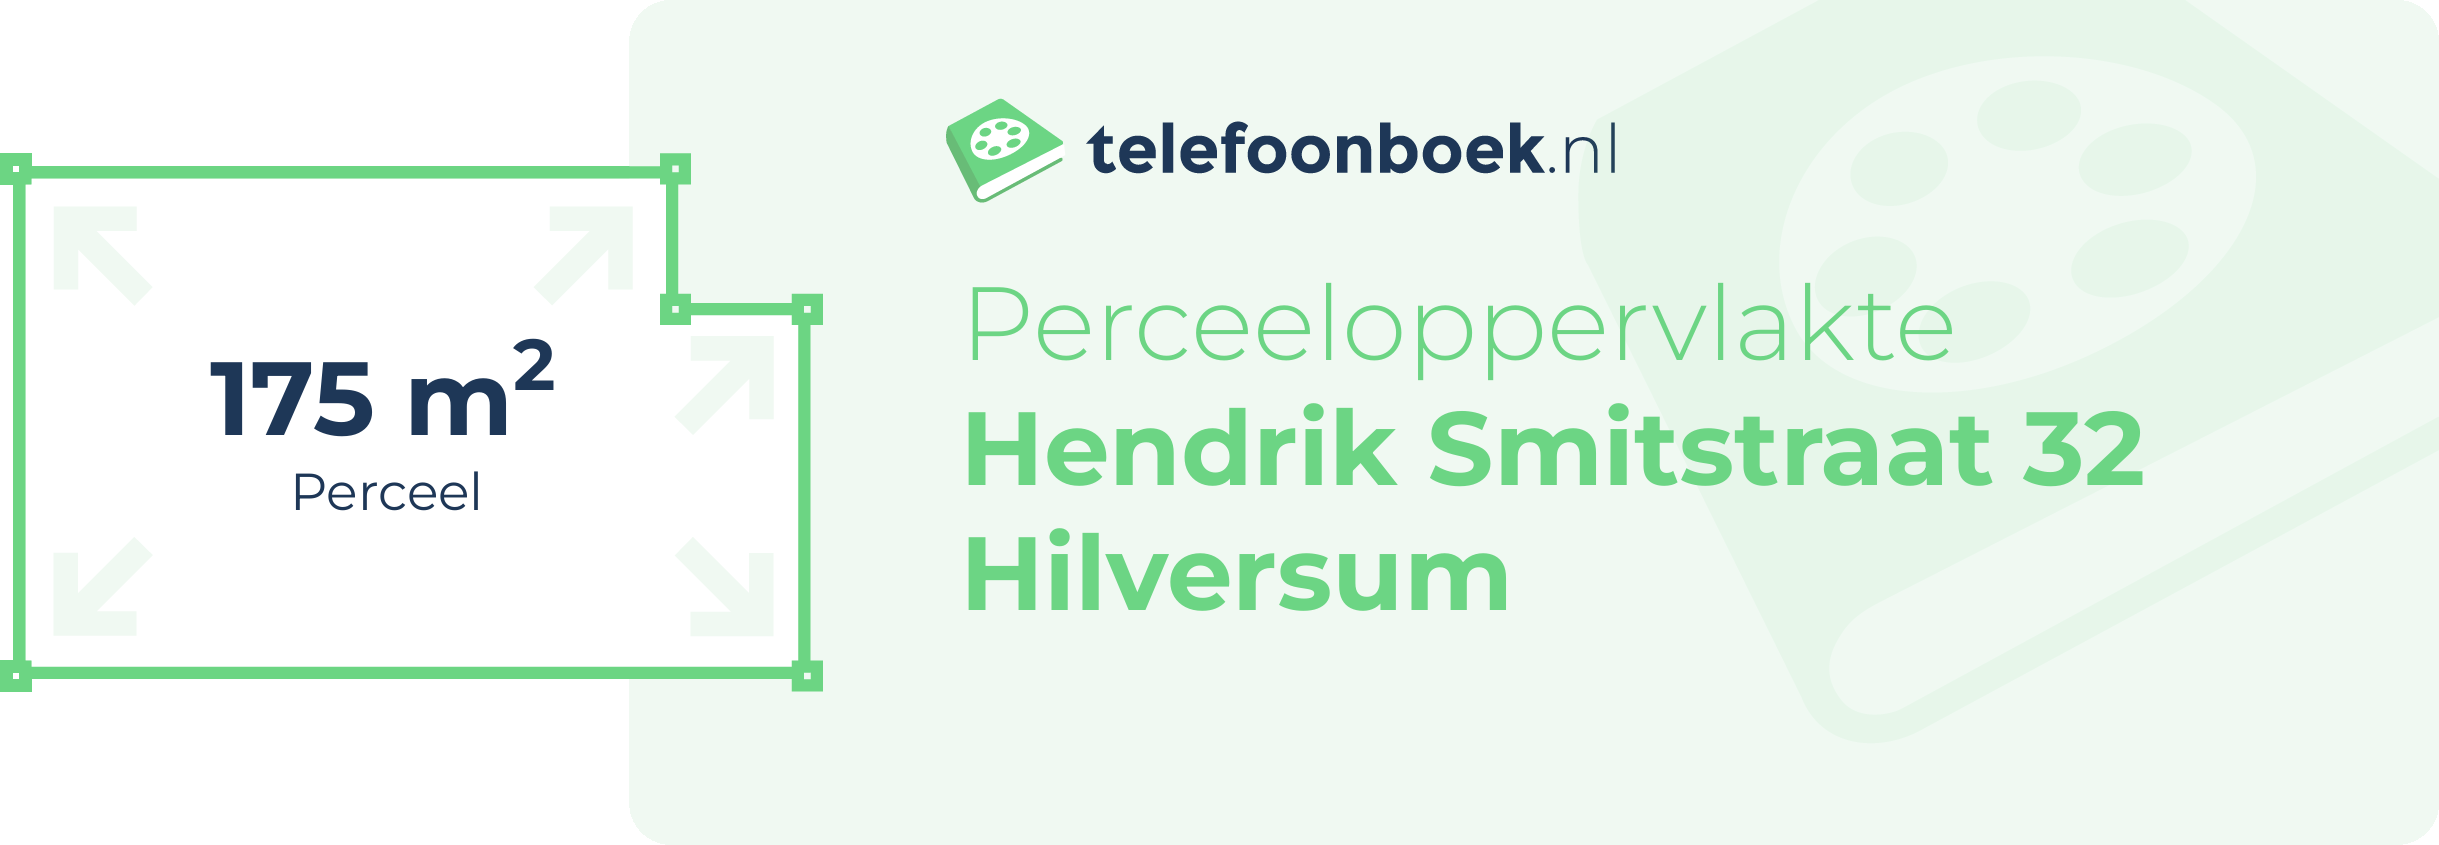 Perceeloppervlakte Hendrik Smitstraat 32 Hilversum